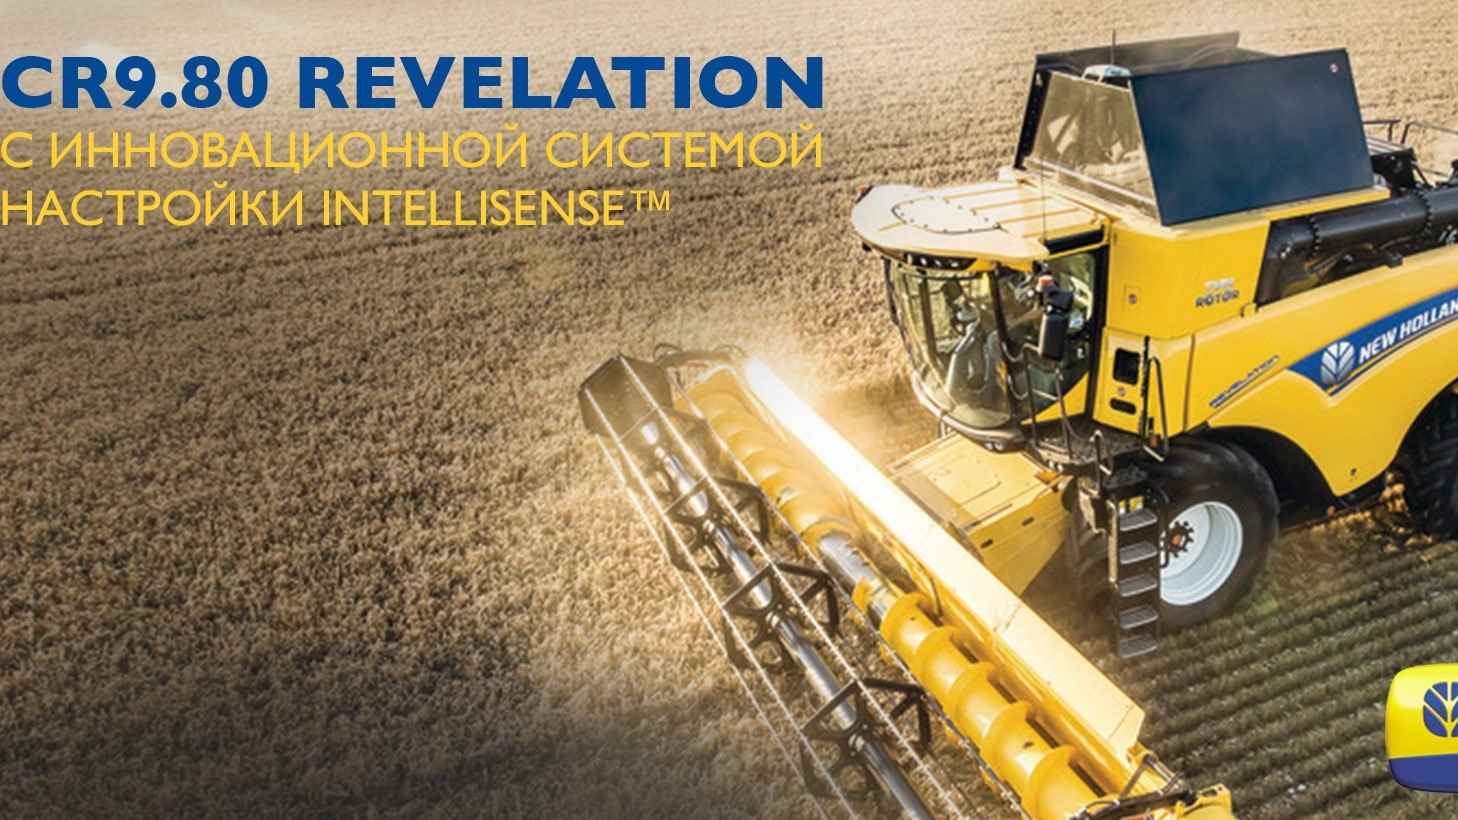 AgroMarathon 2020 “Innovation Race” – New Holland’s virtual demonstration program for the CR Revelation Combine